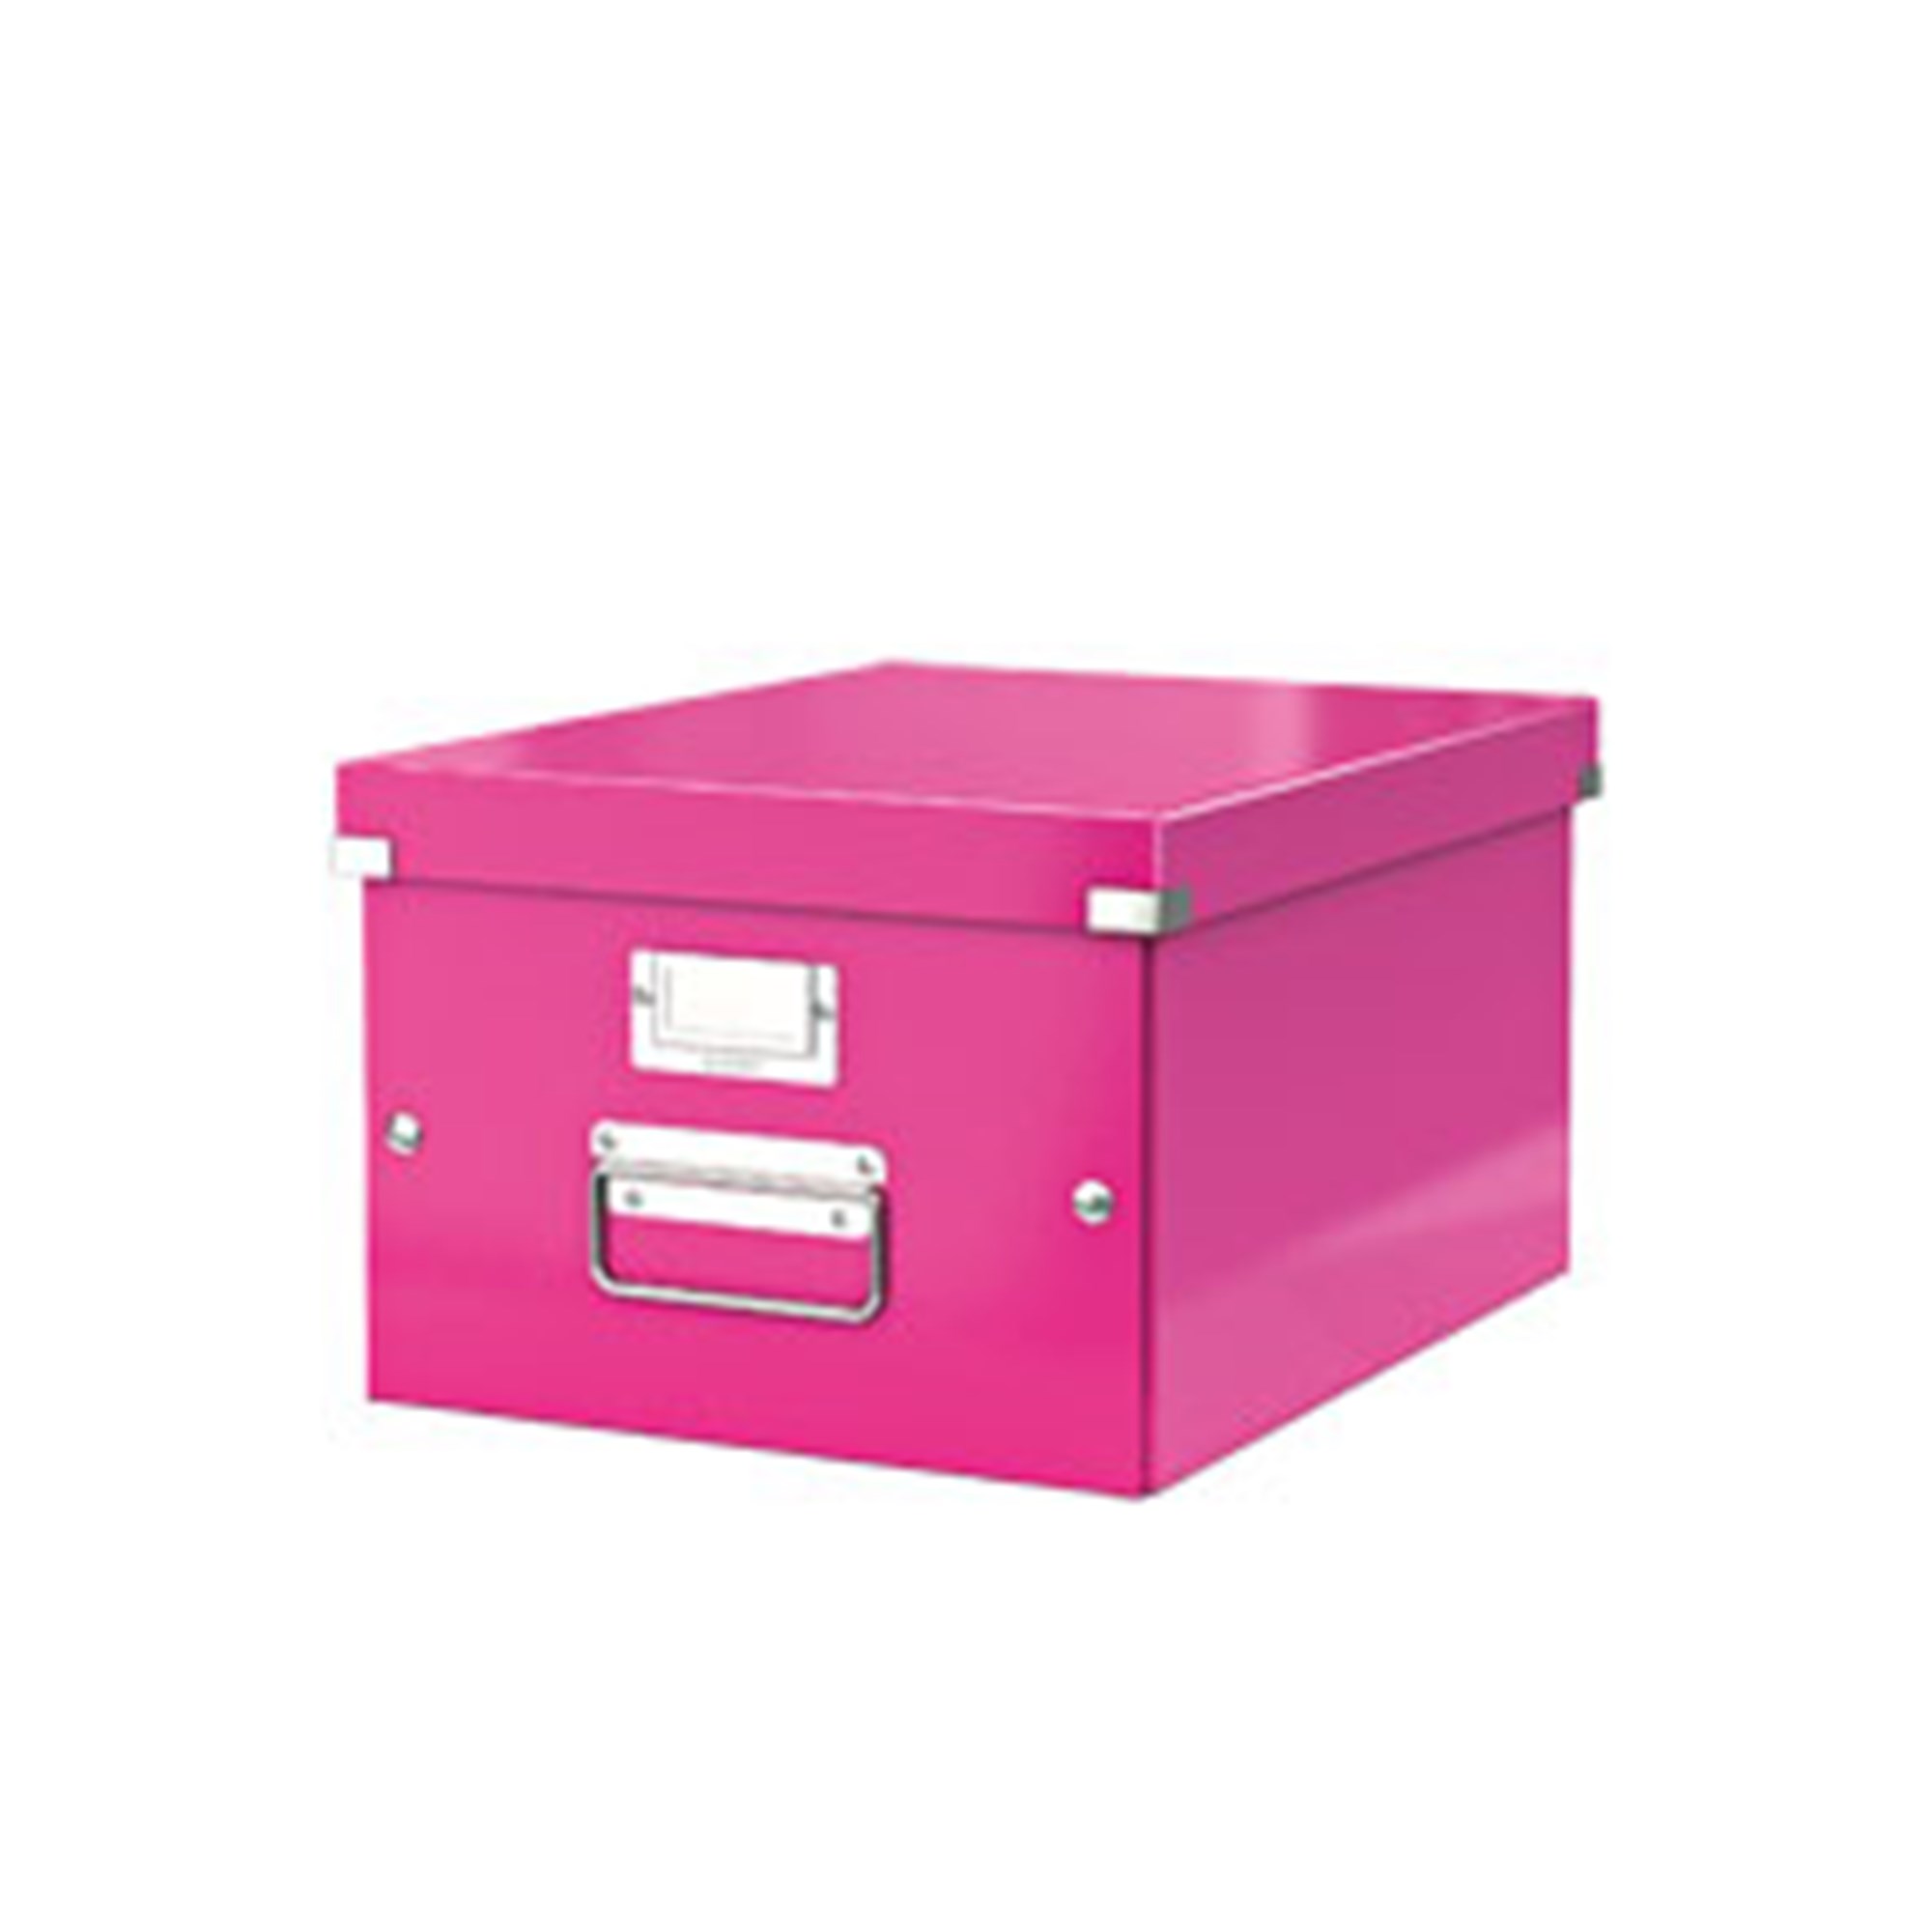 Arkivboks Click&Store mellem WOW pink